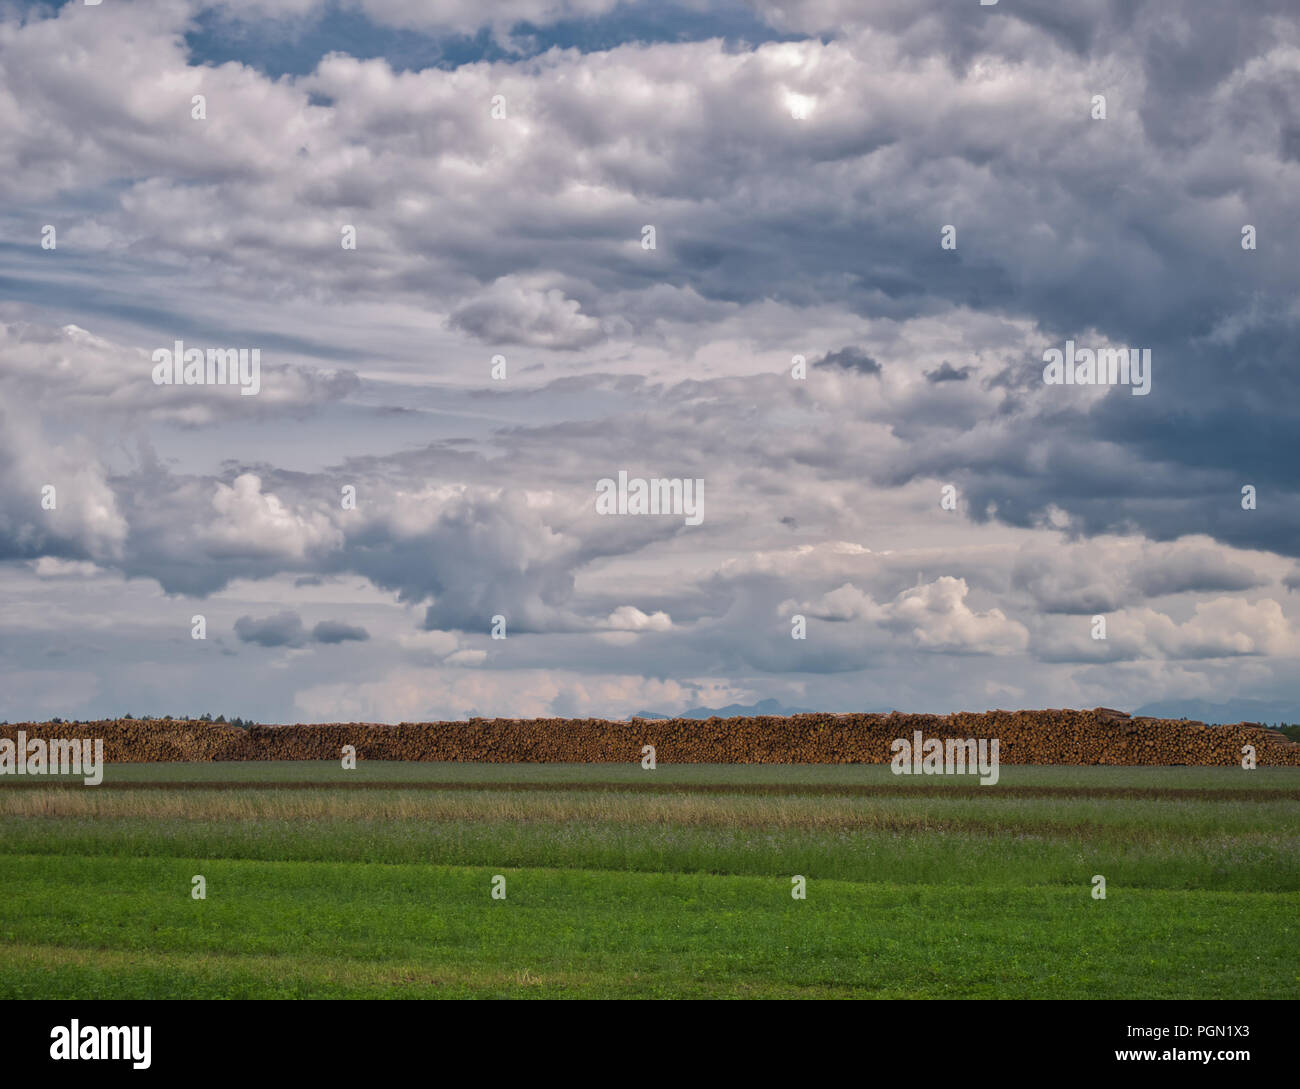 Enregistrements sauvegardés de la foresterie derrière une prairie avec d'impressionnants cloudscape Banque D'Images